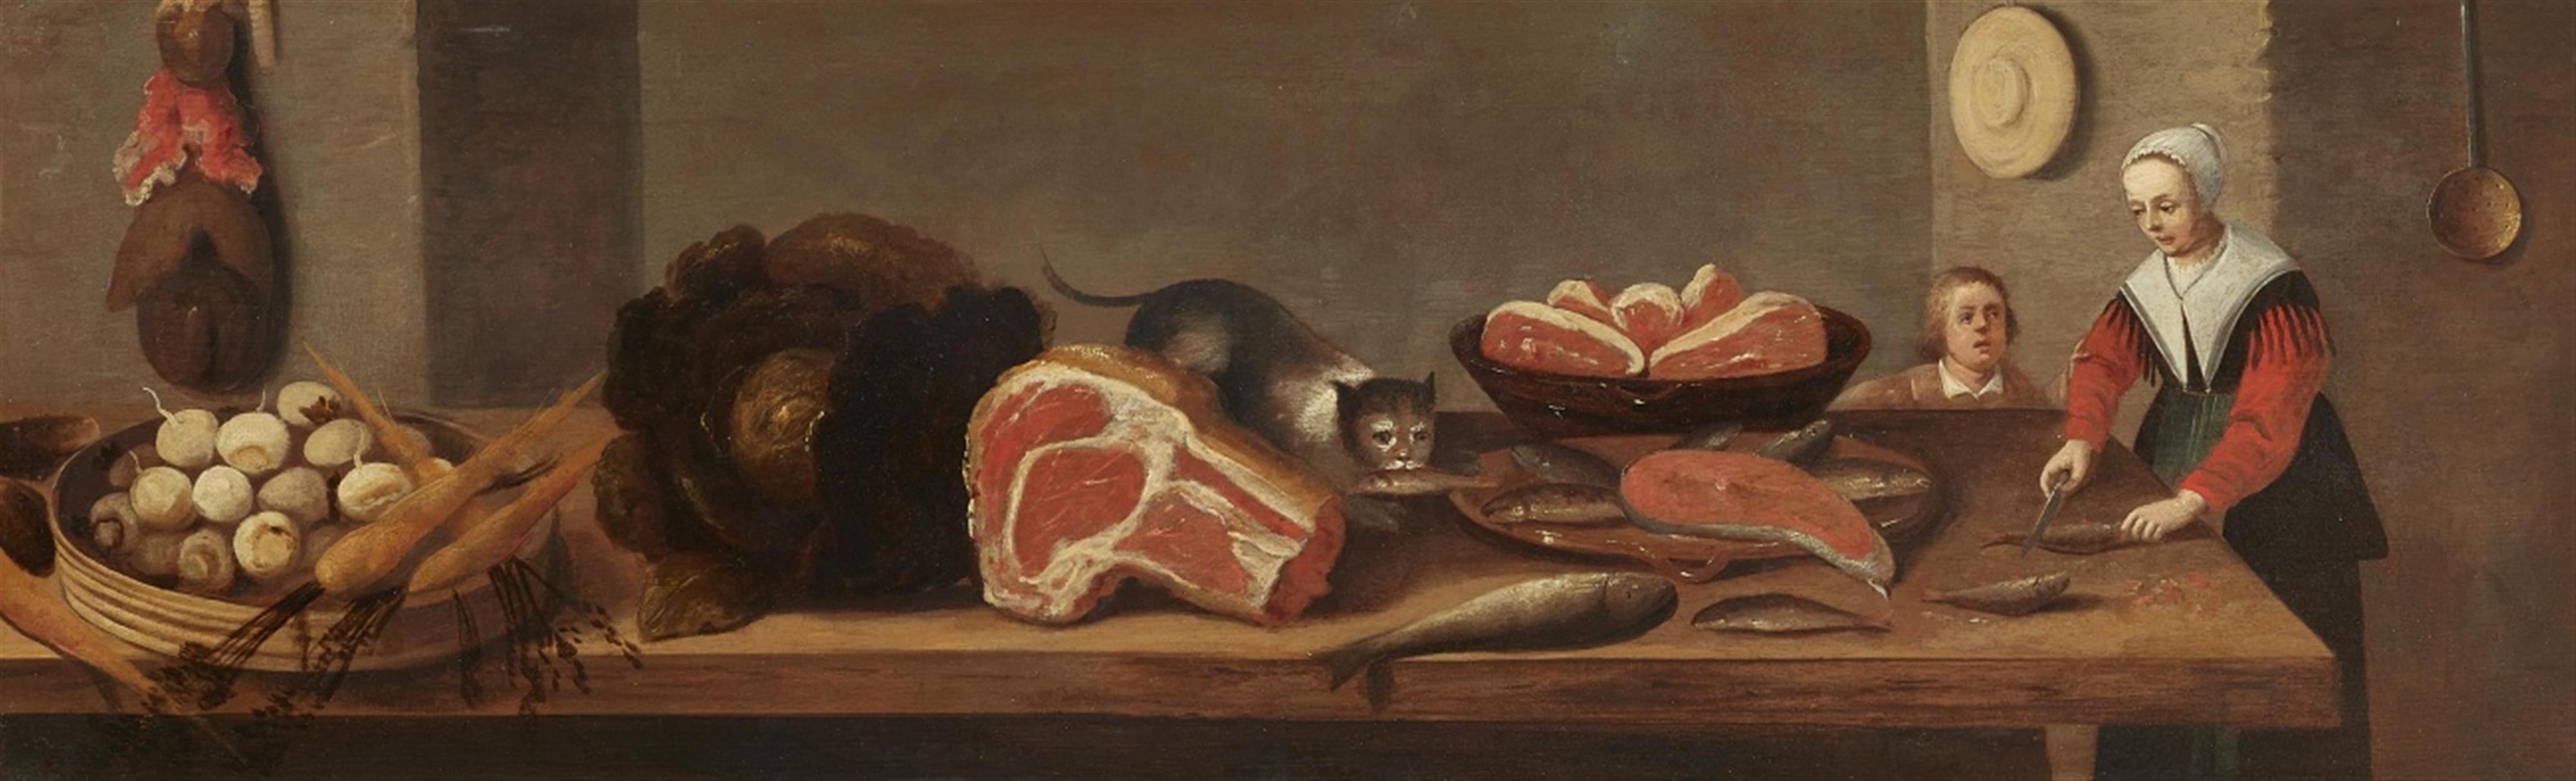 Flämischer Meister des 17. Jahrhunderts - Küchenstillleben mit Magd - image-1